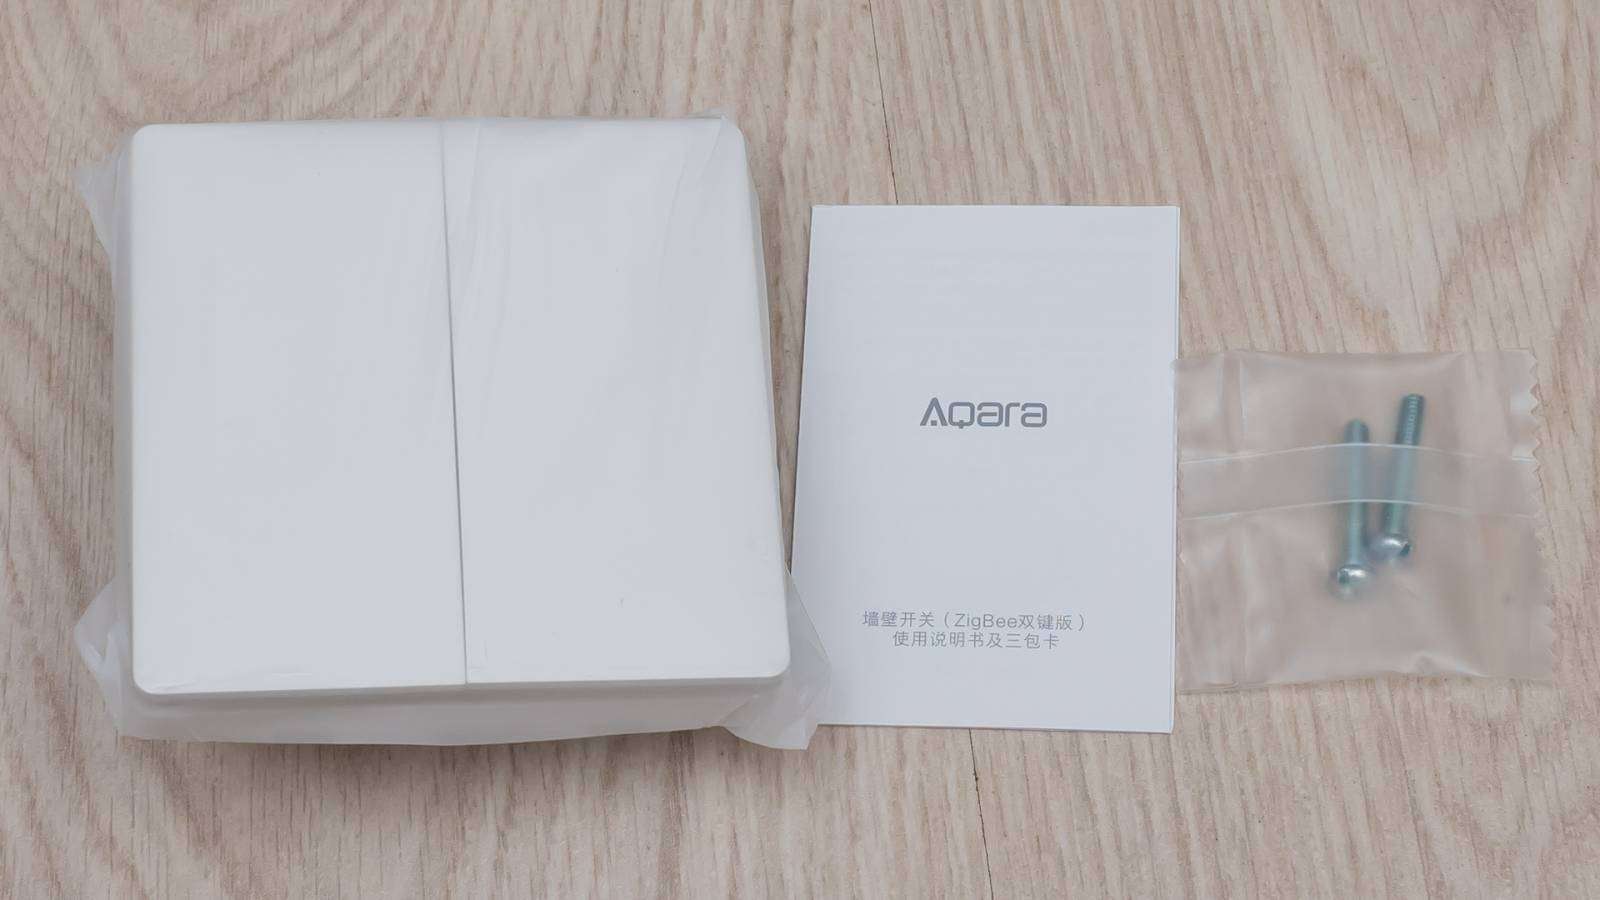 Aliexpress: Двухкнопочный встраиваемый проводной выключатель Aqara для системы Xiaomi Mi Home